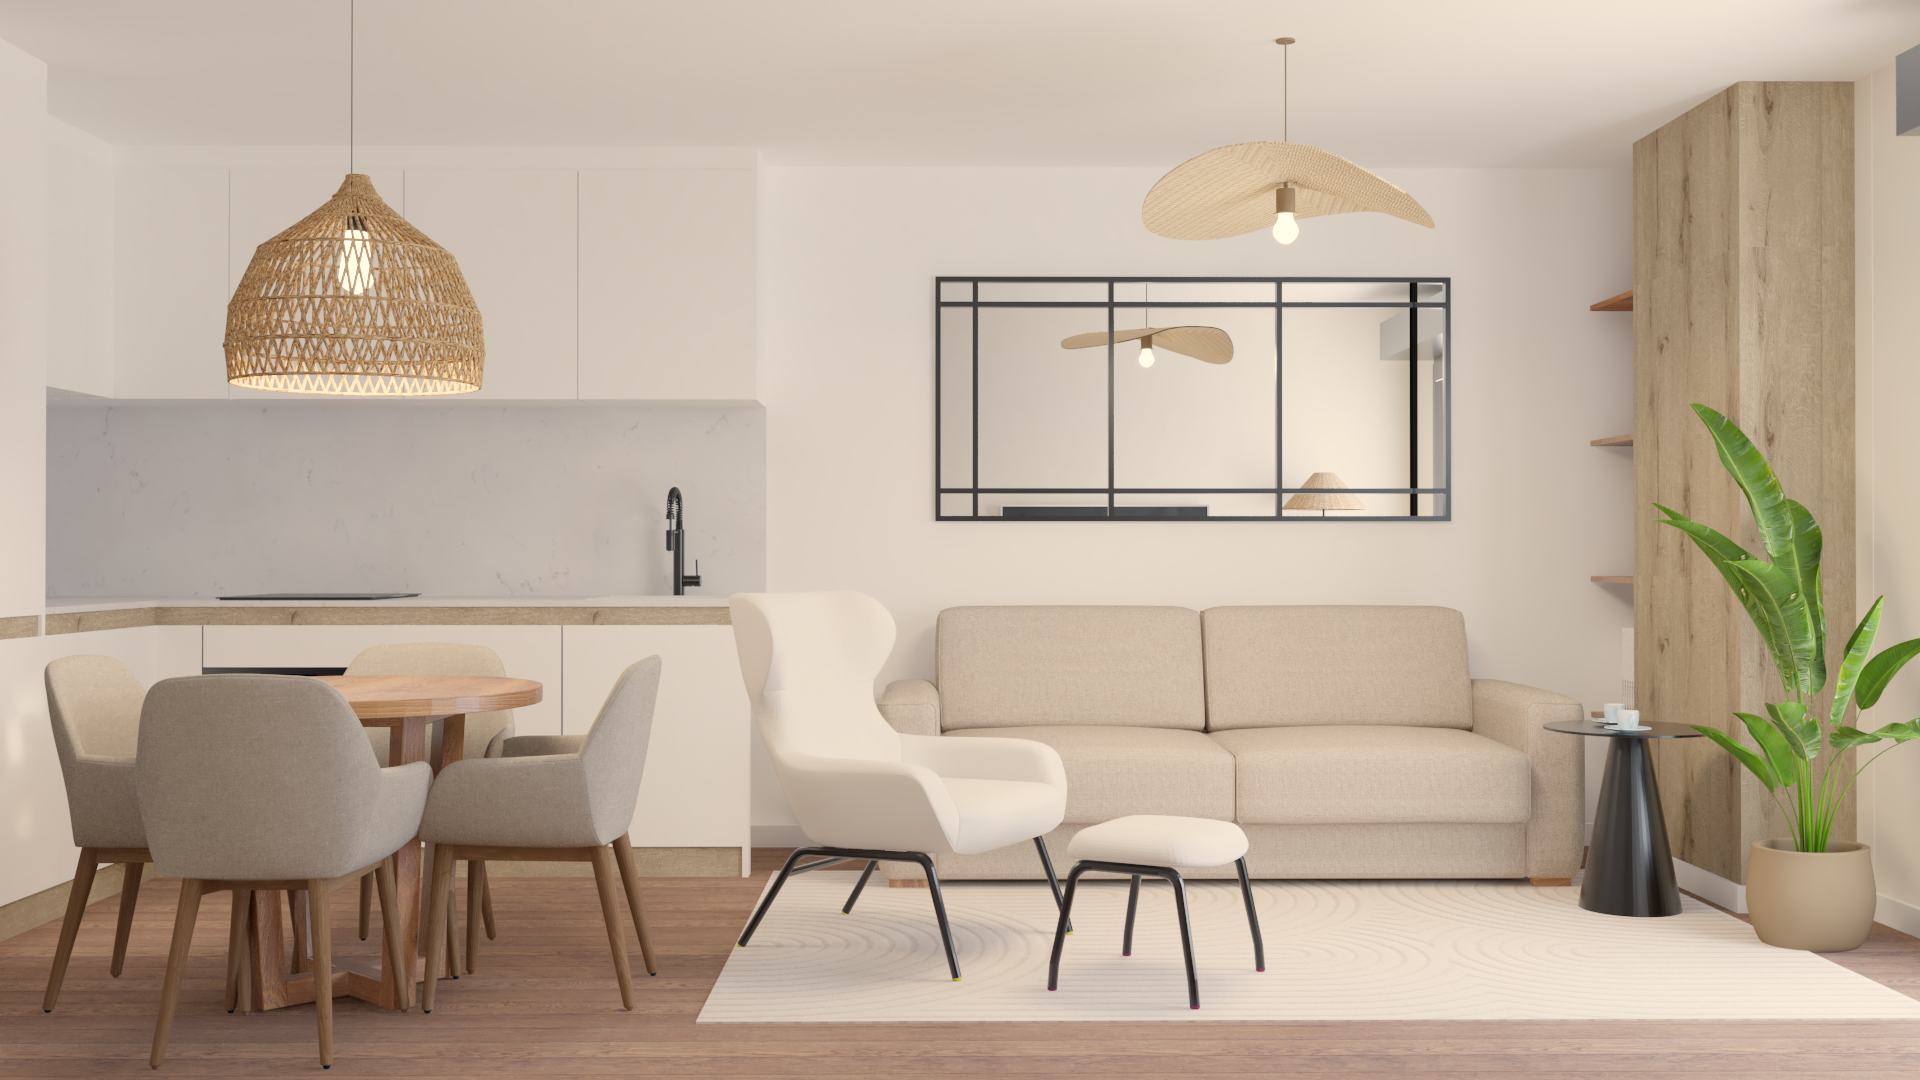 small apartment interior design